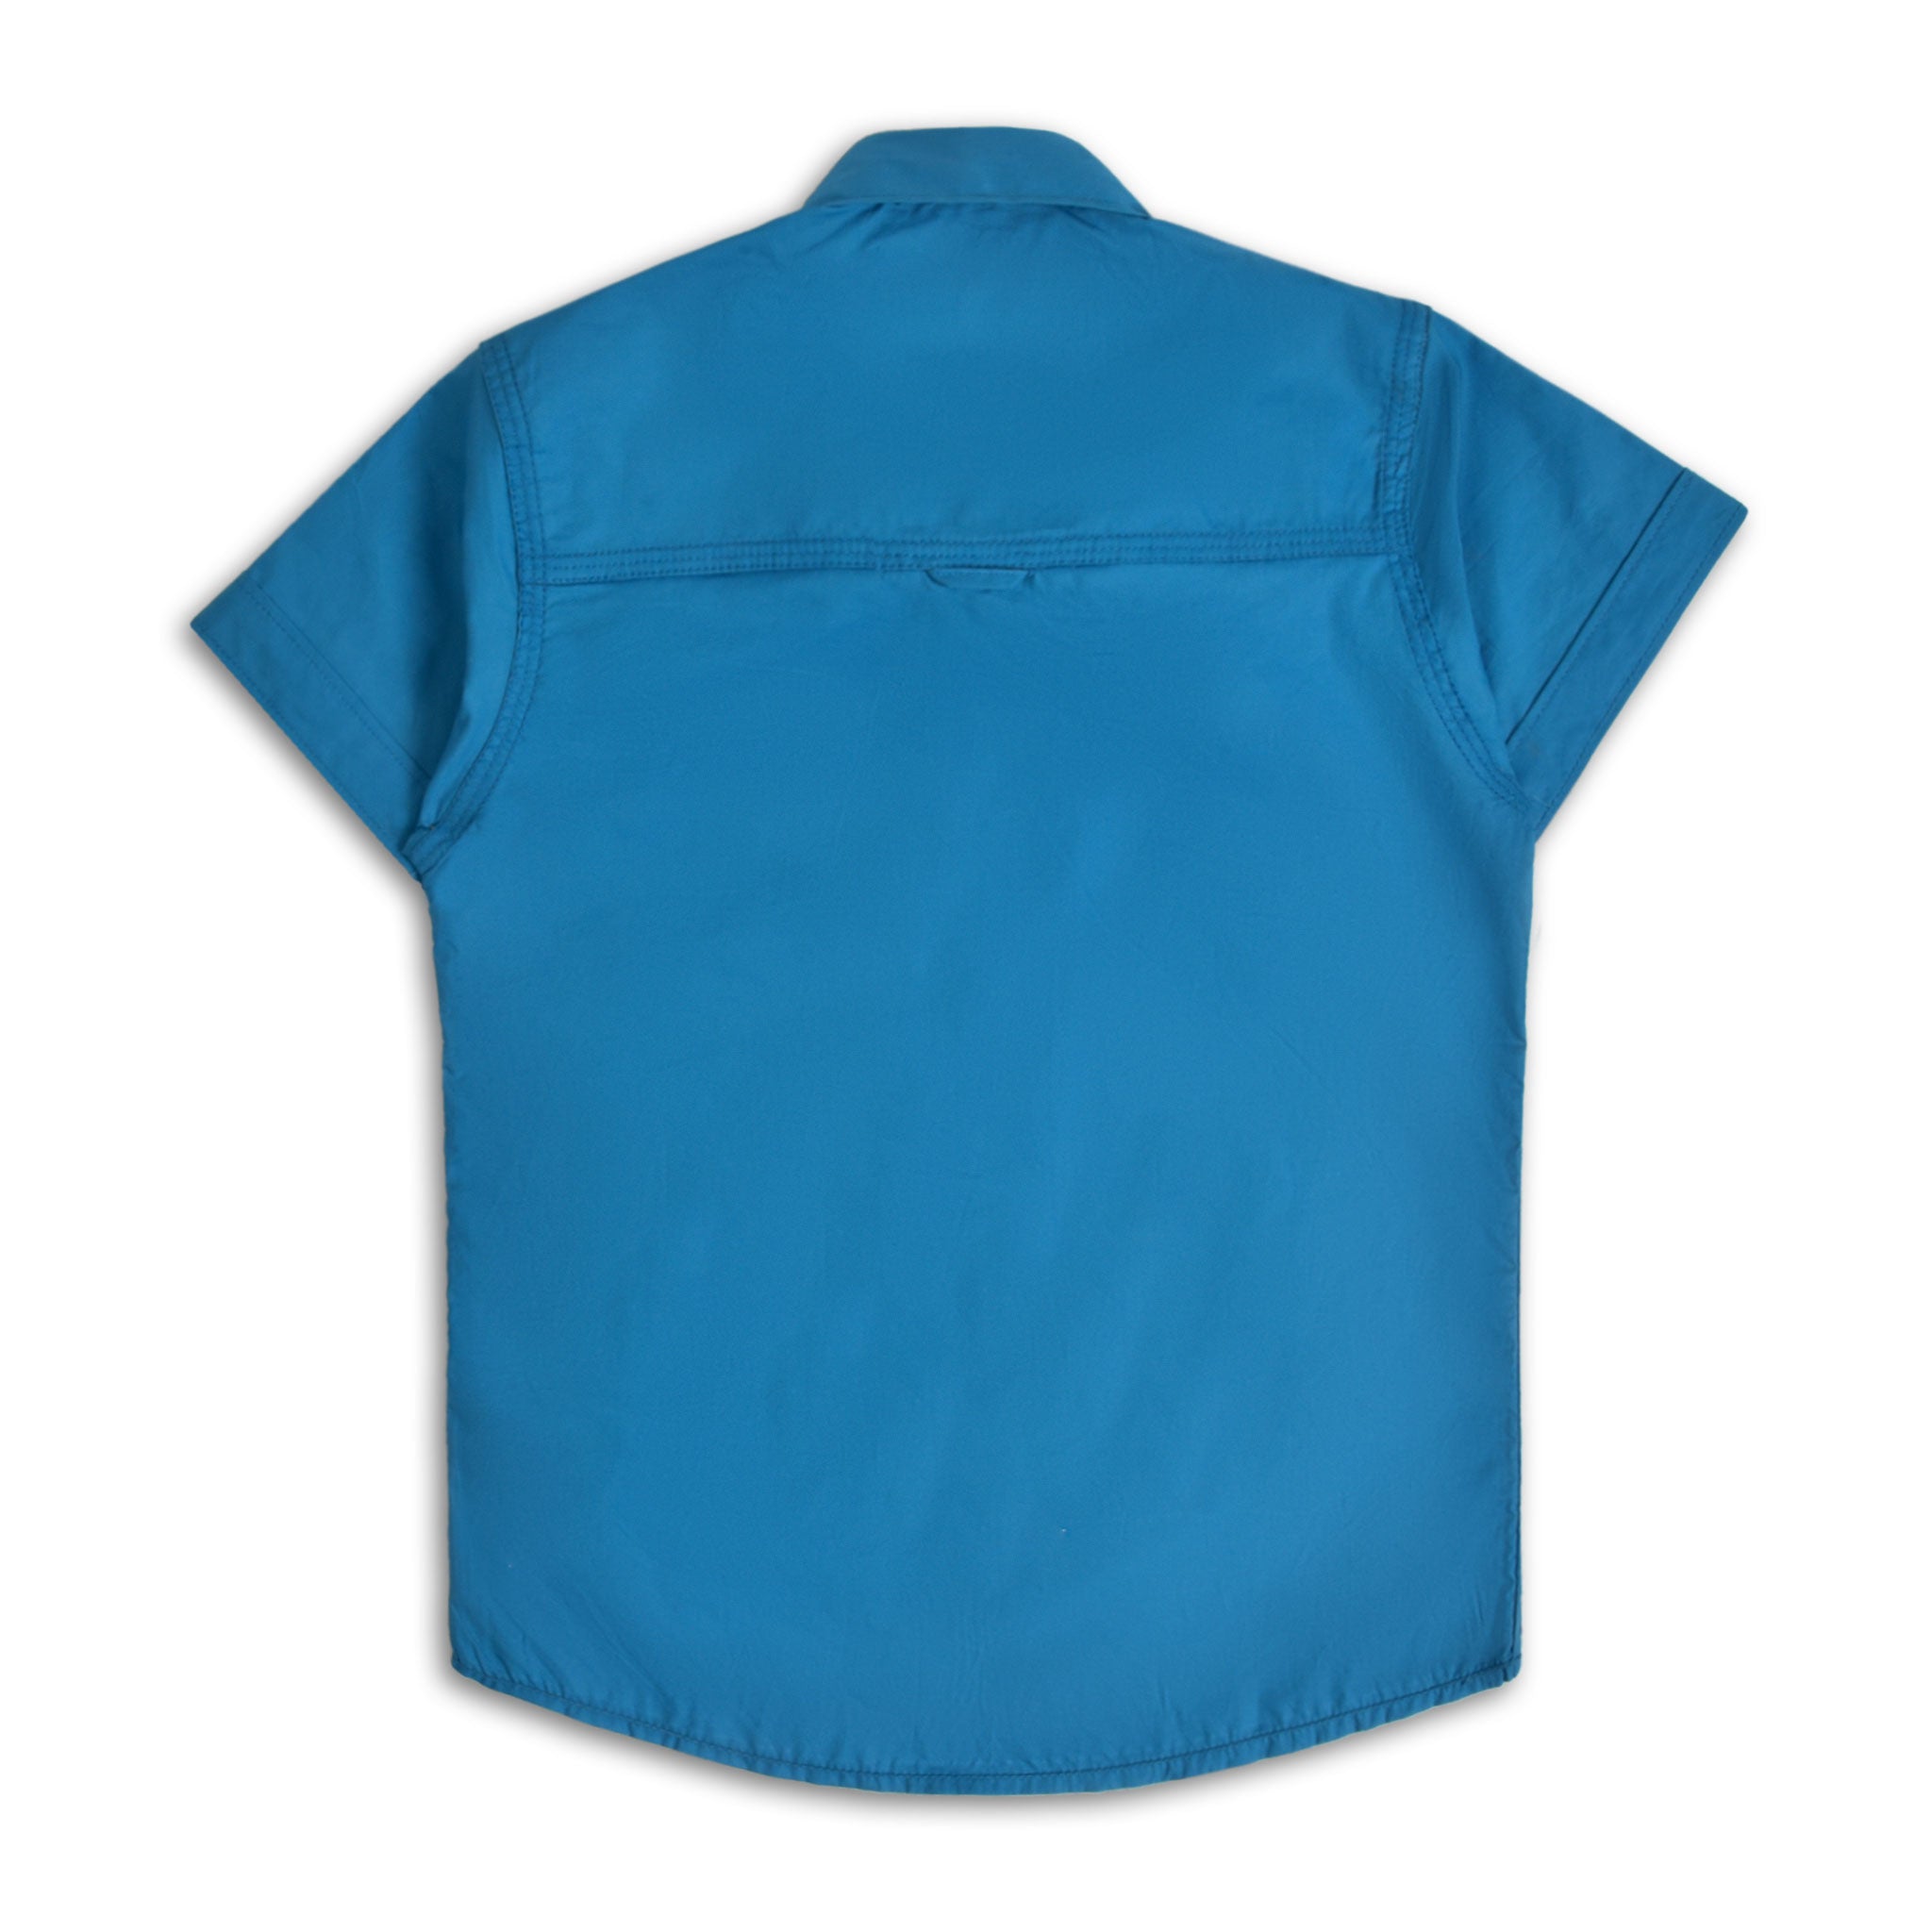 Cerulean Blue Casual Shirt